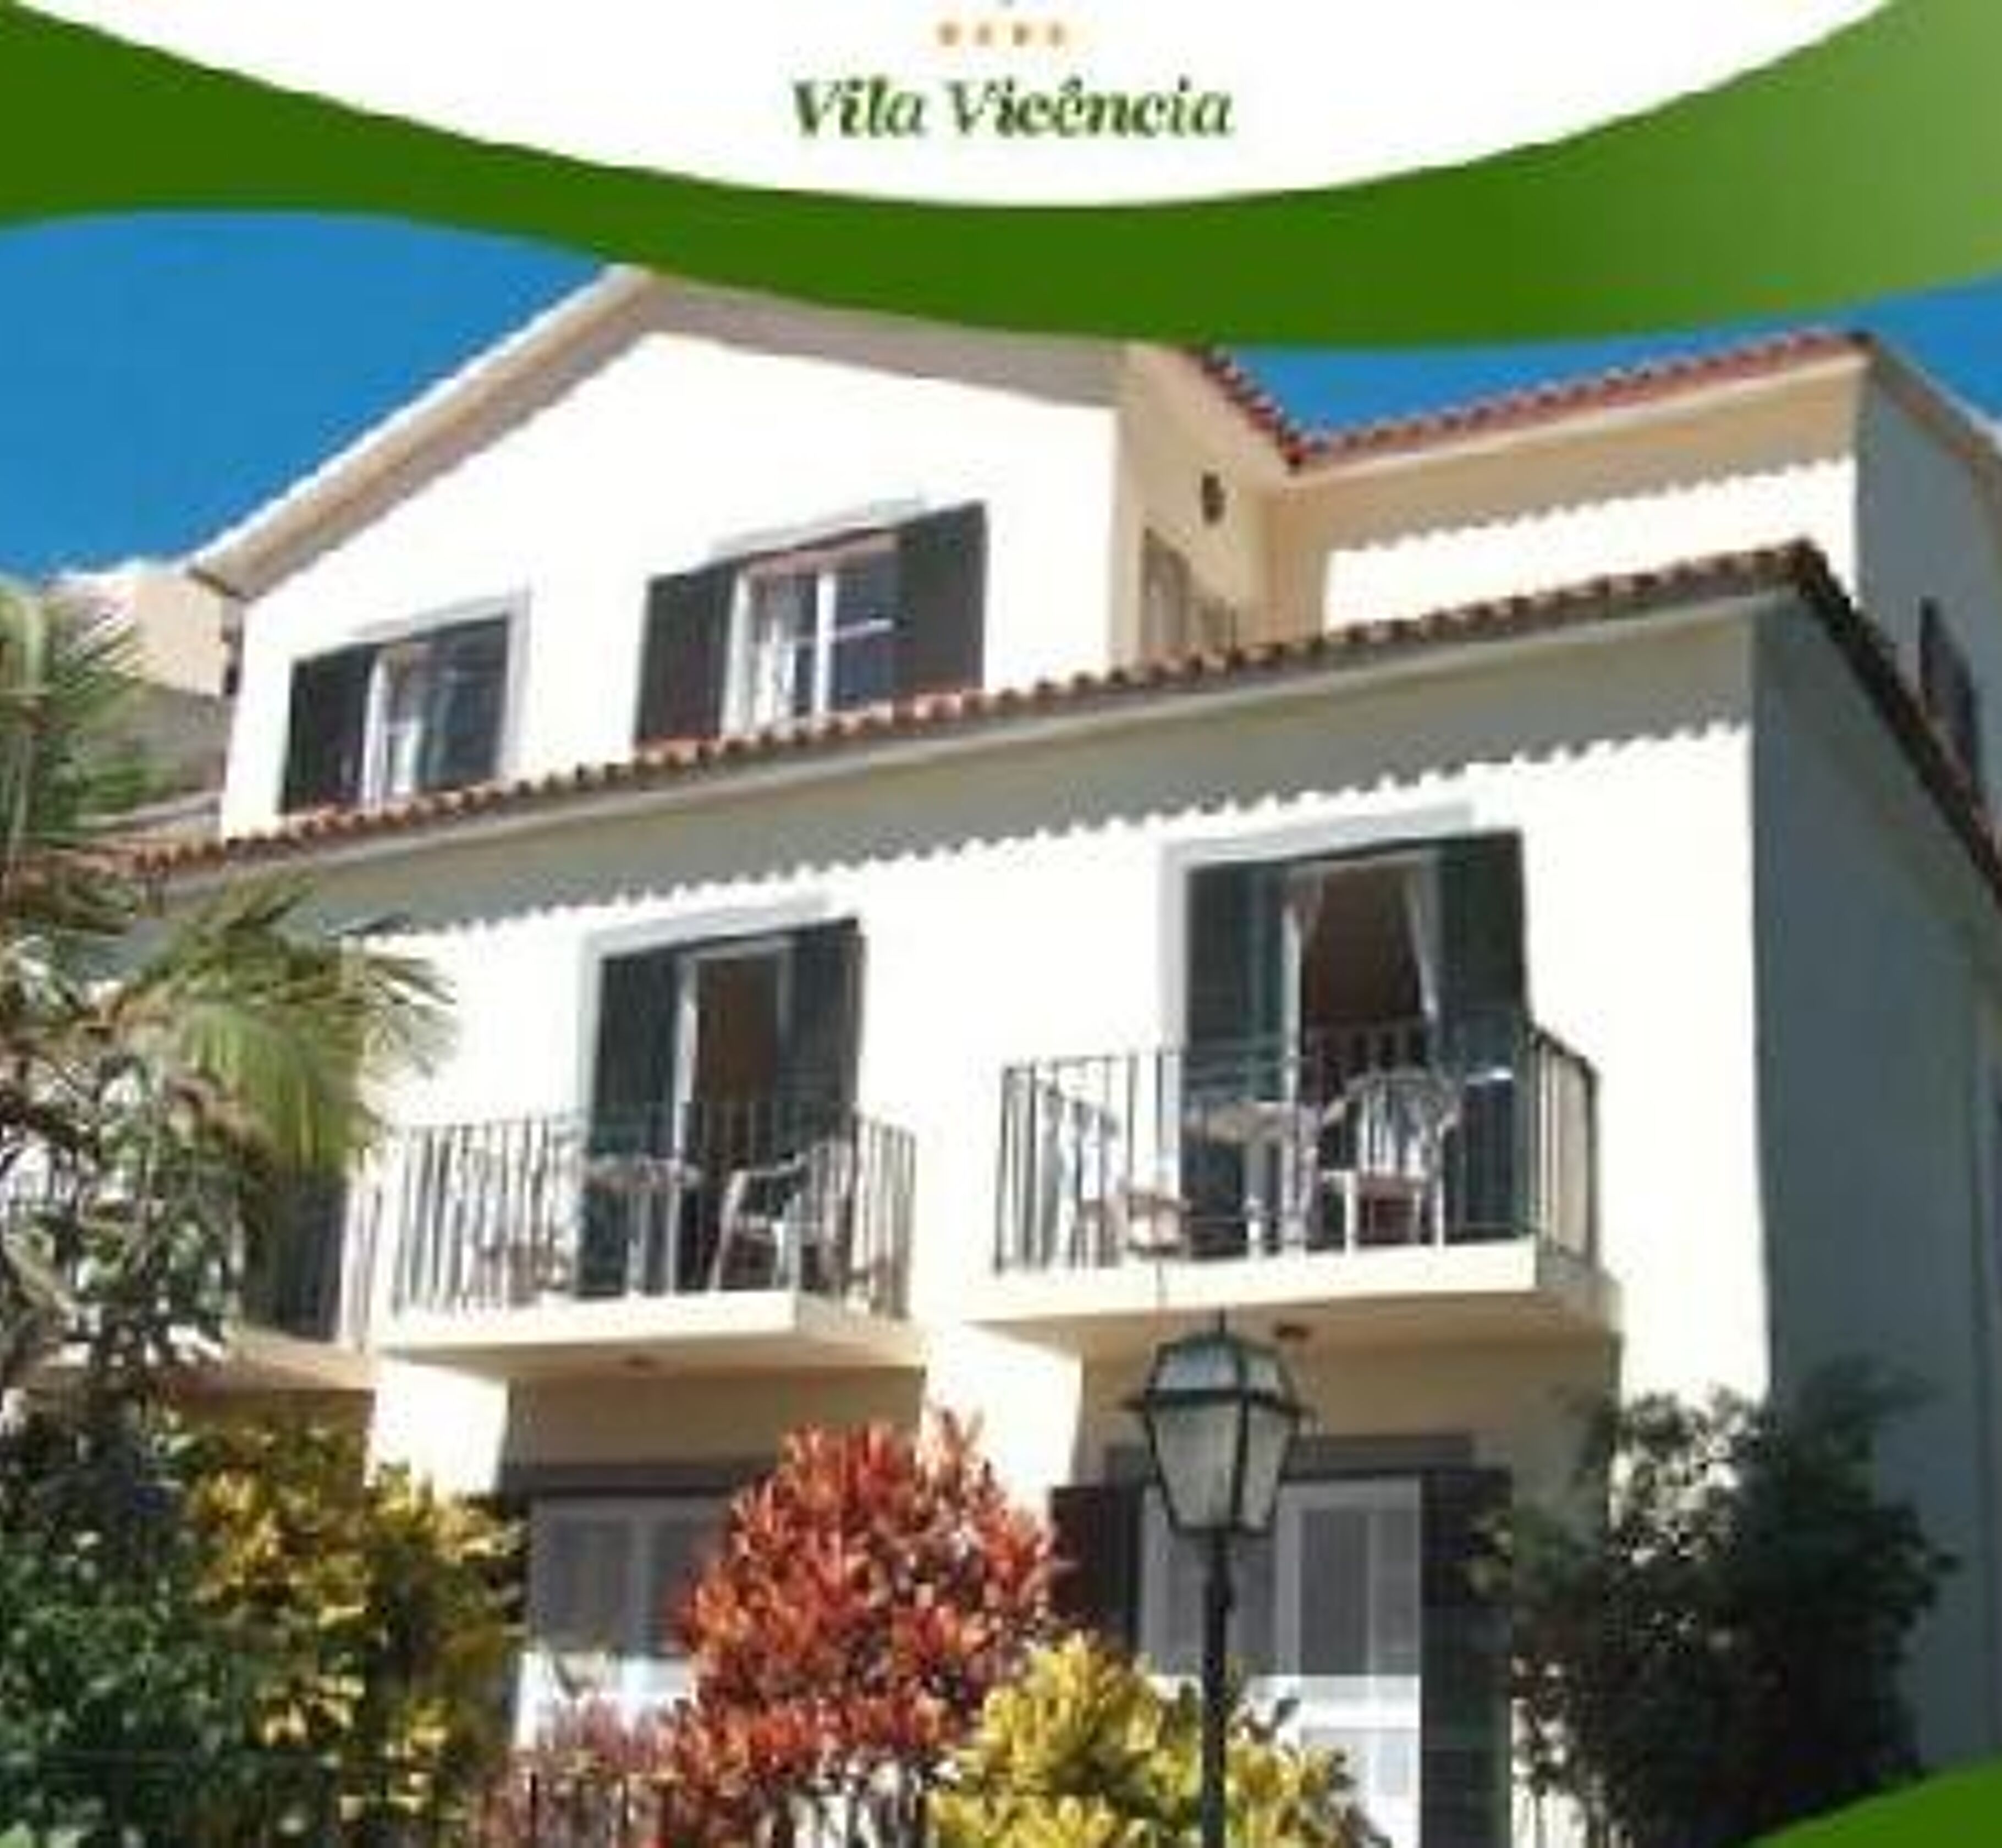 Vicencia Vila